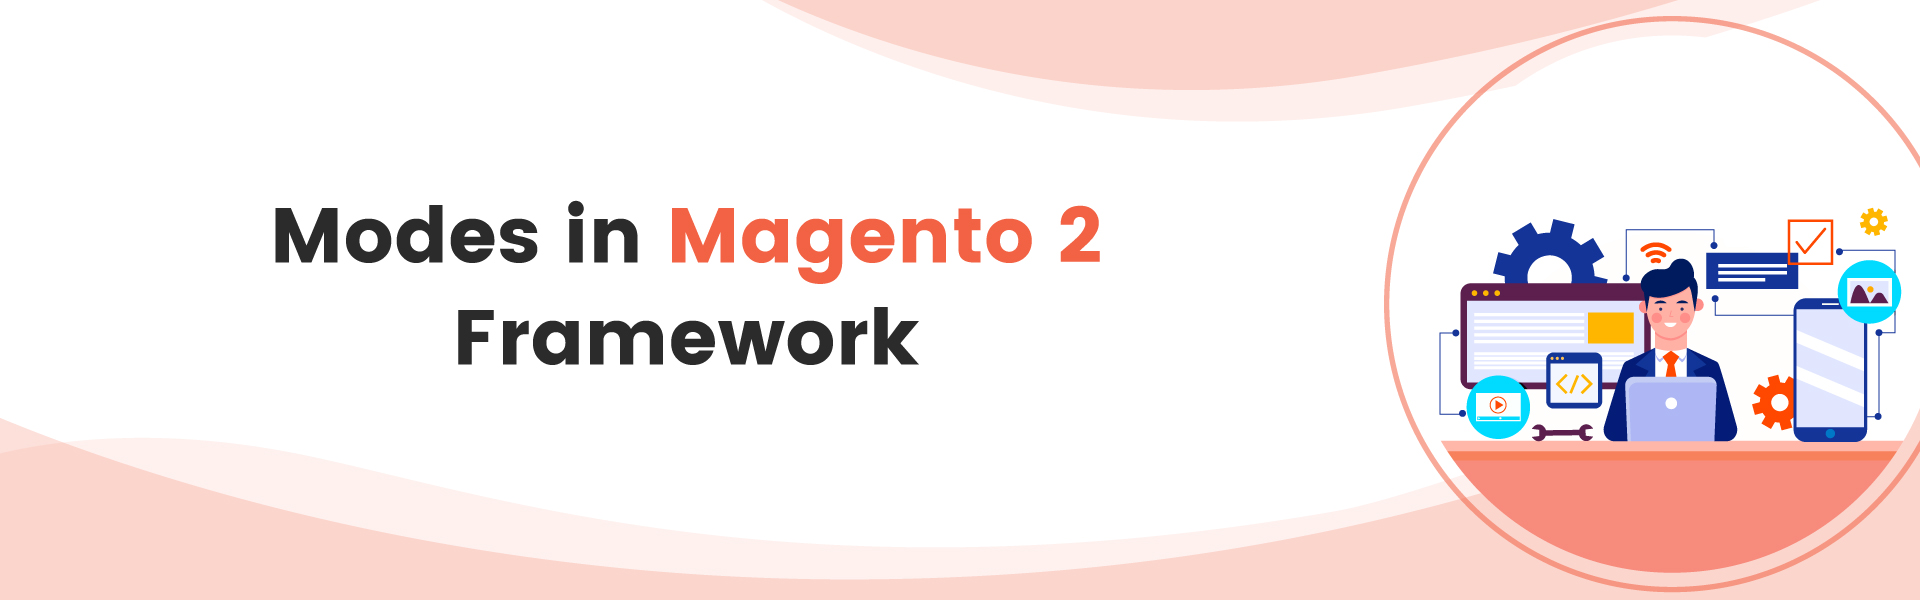 Magento 2 Framework